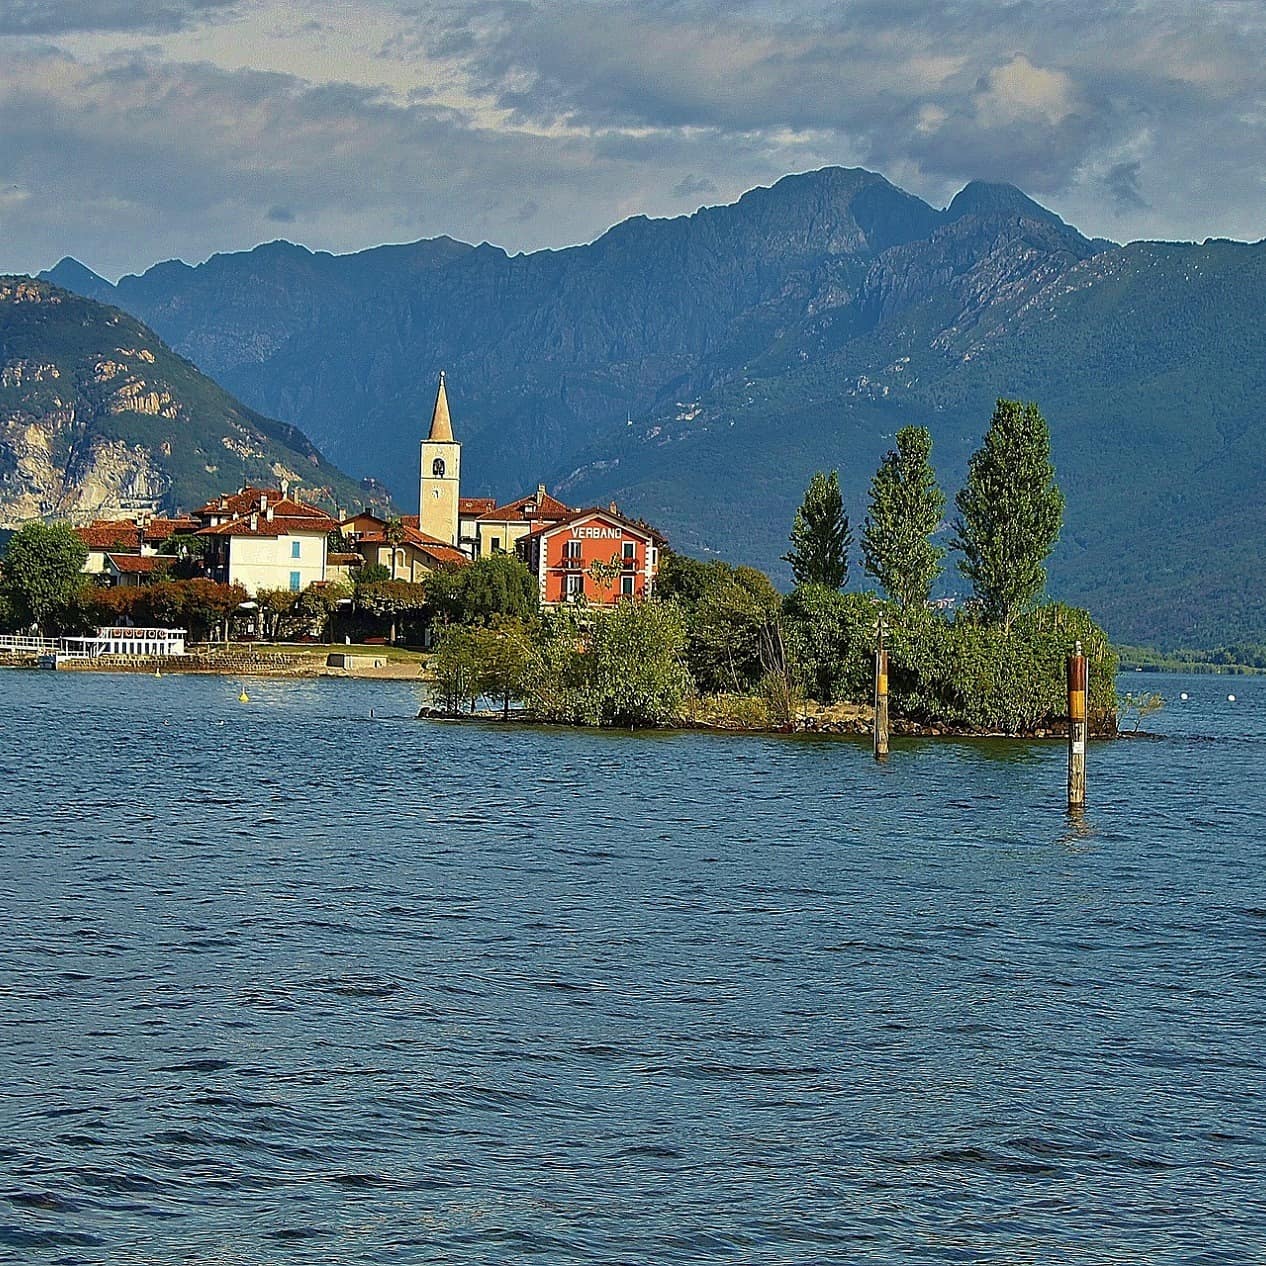 Blick auf eine Kirche und Häuser auf einer Insel im Lago Maggiore